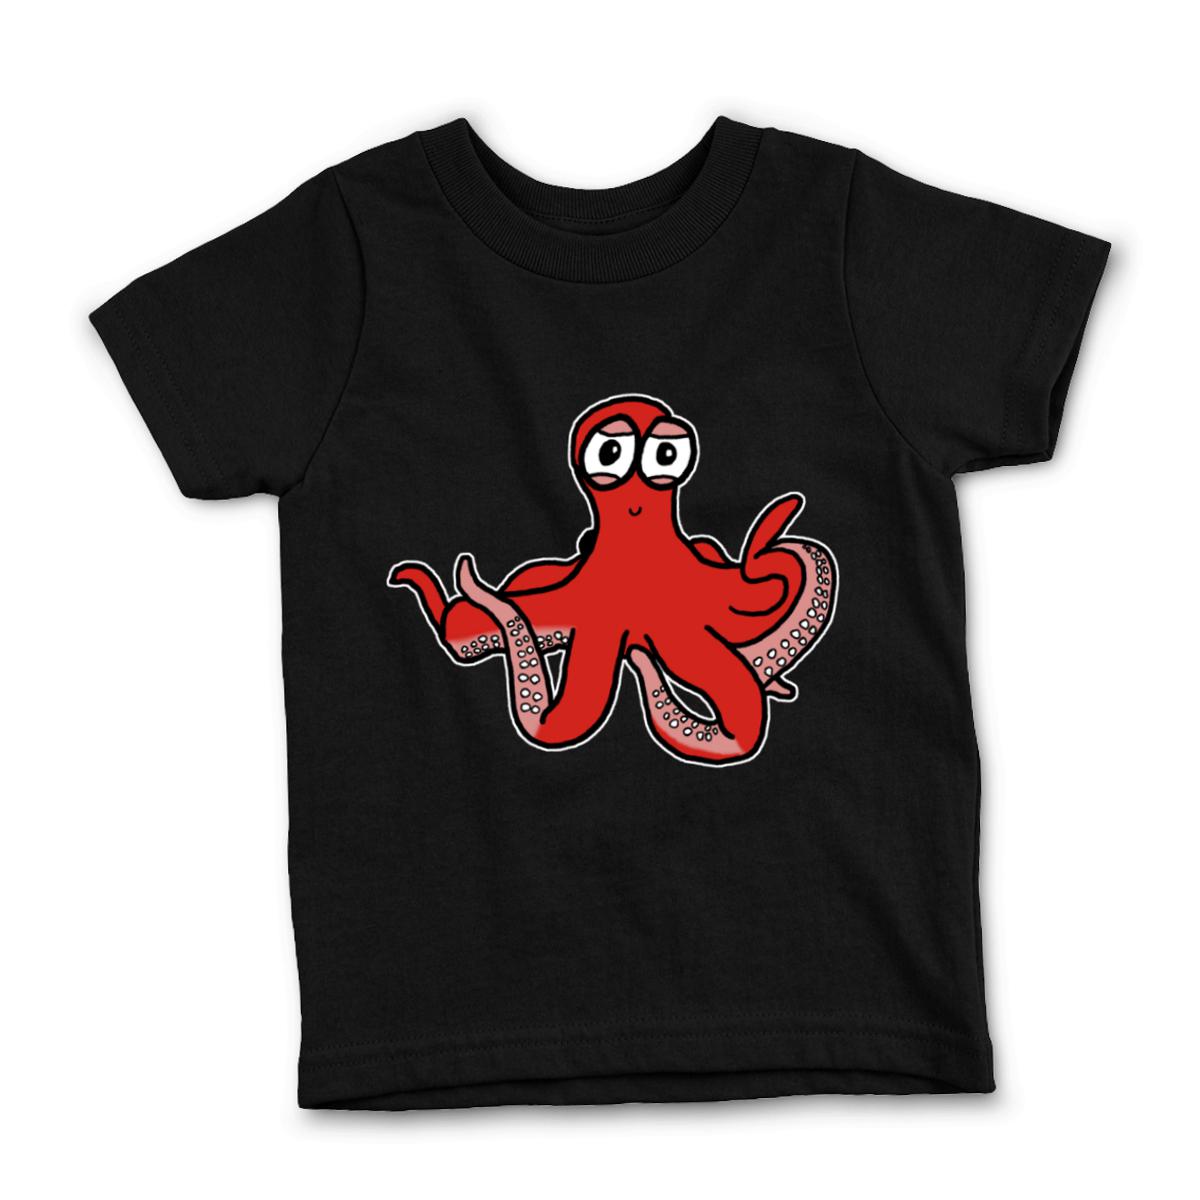 Octopus Kid's Tee Small black